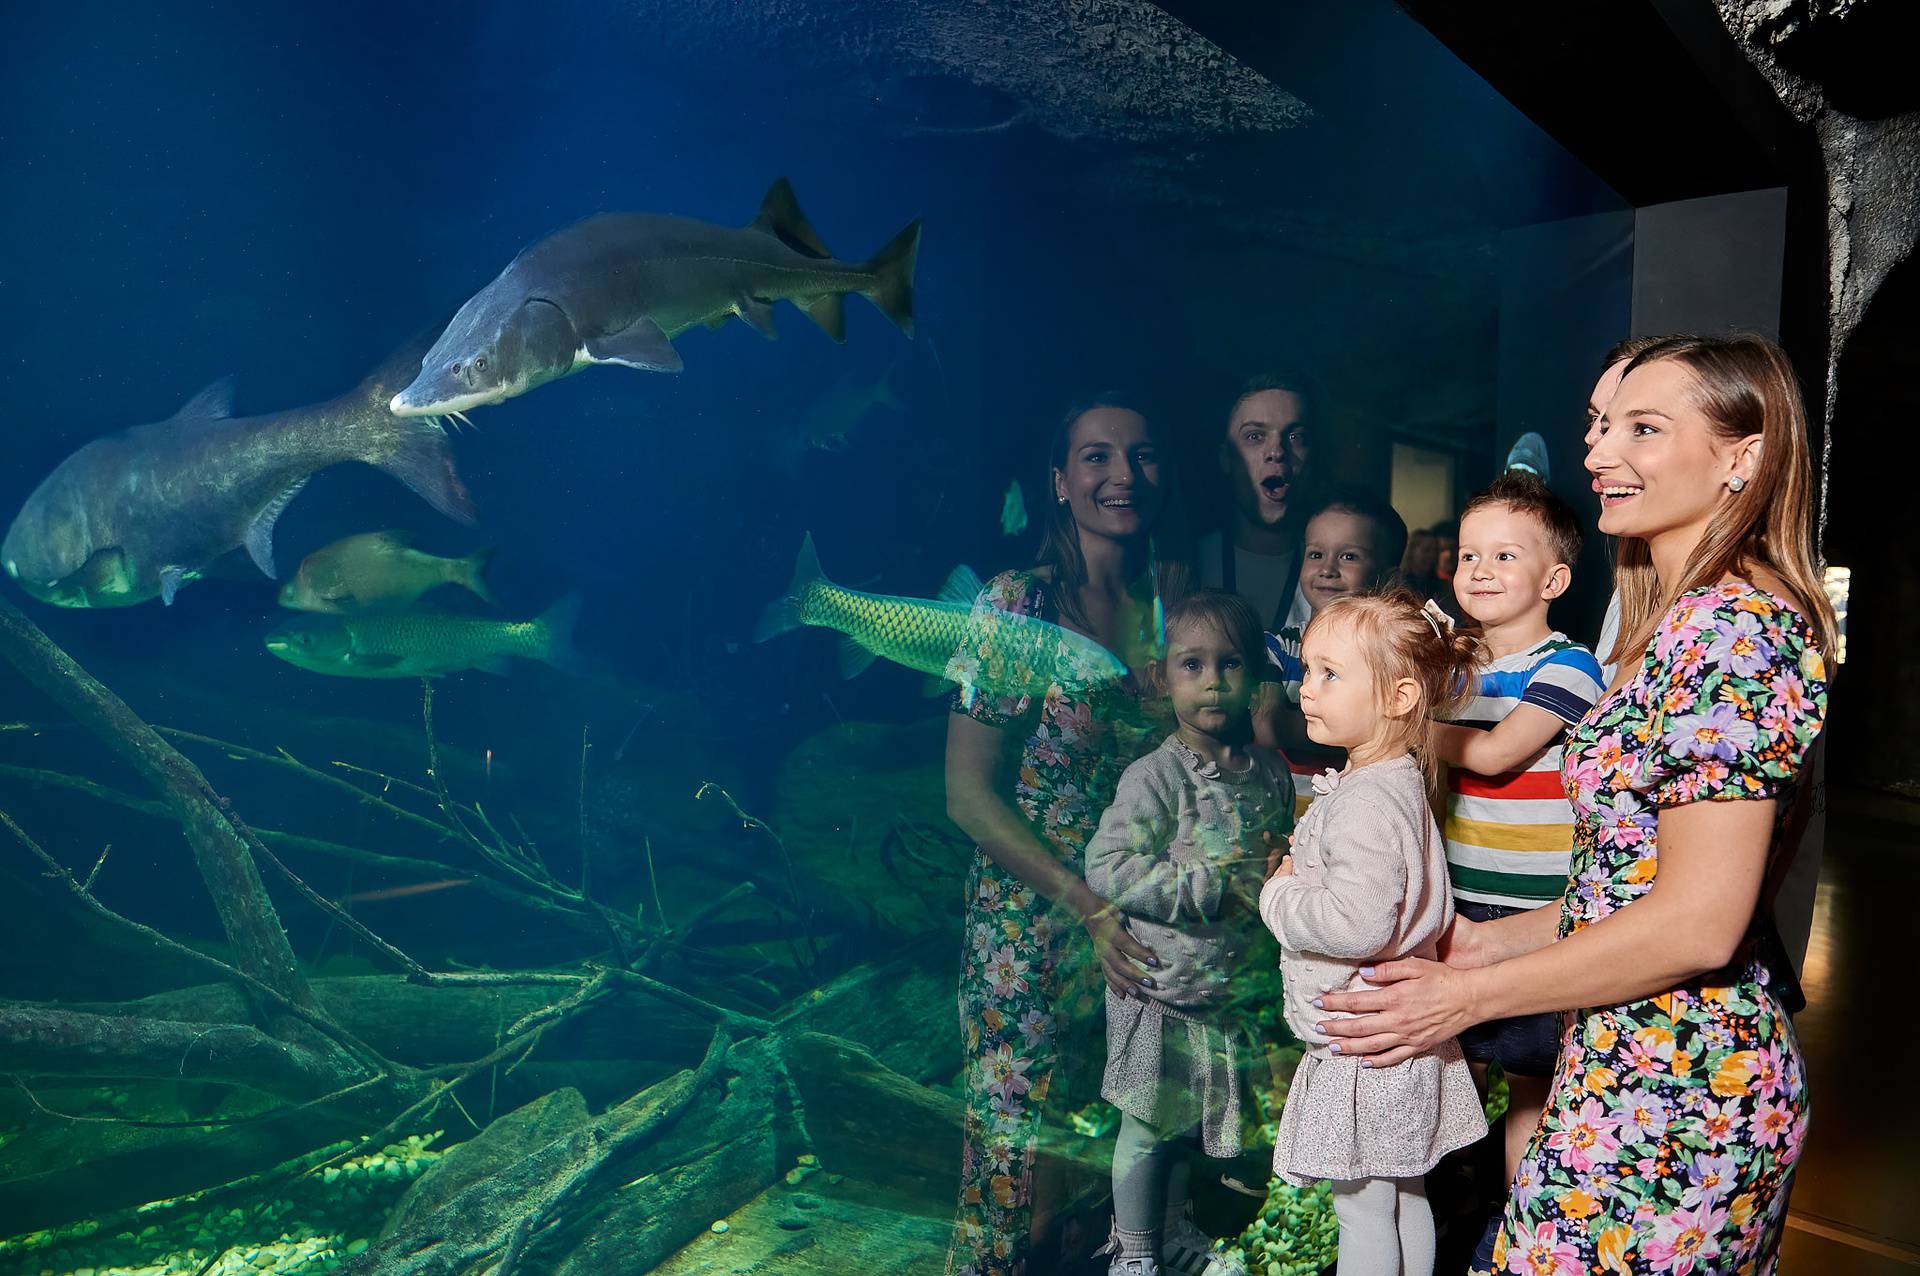 Jedinstveni slatkovodni akvarij Aquatika ovaj vikend slavi sedmi rođendan